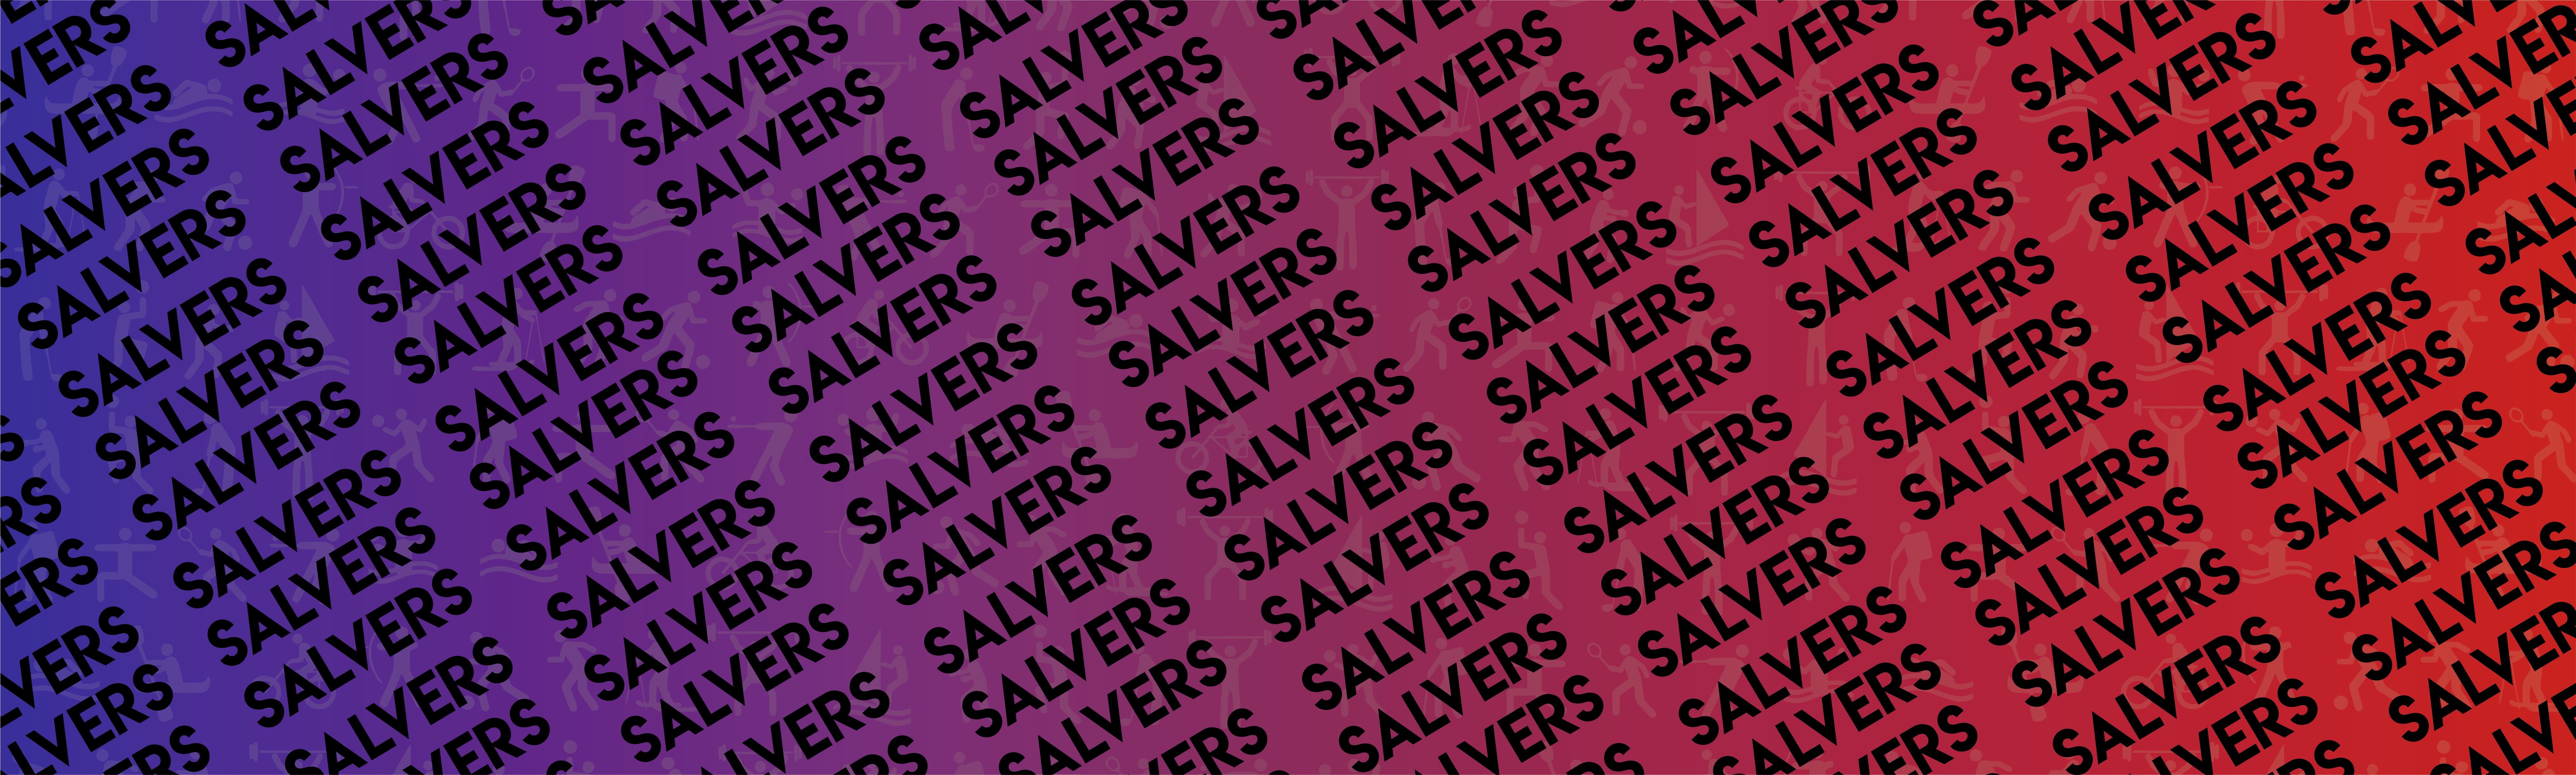 Salvers